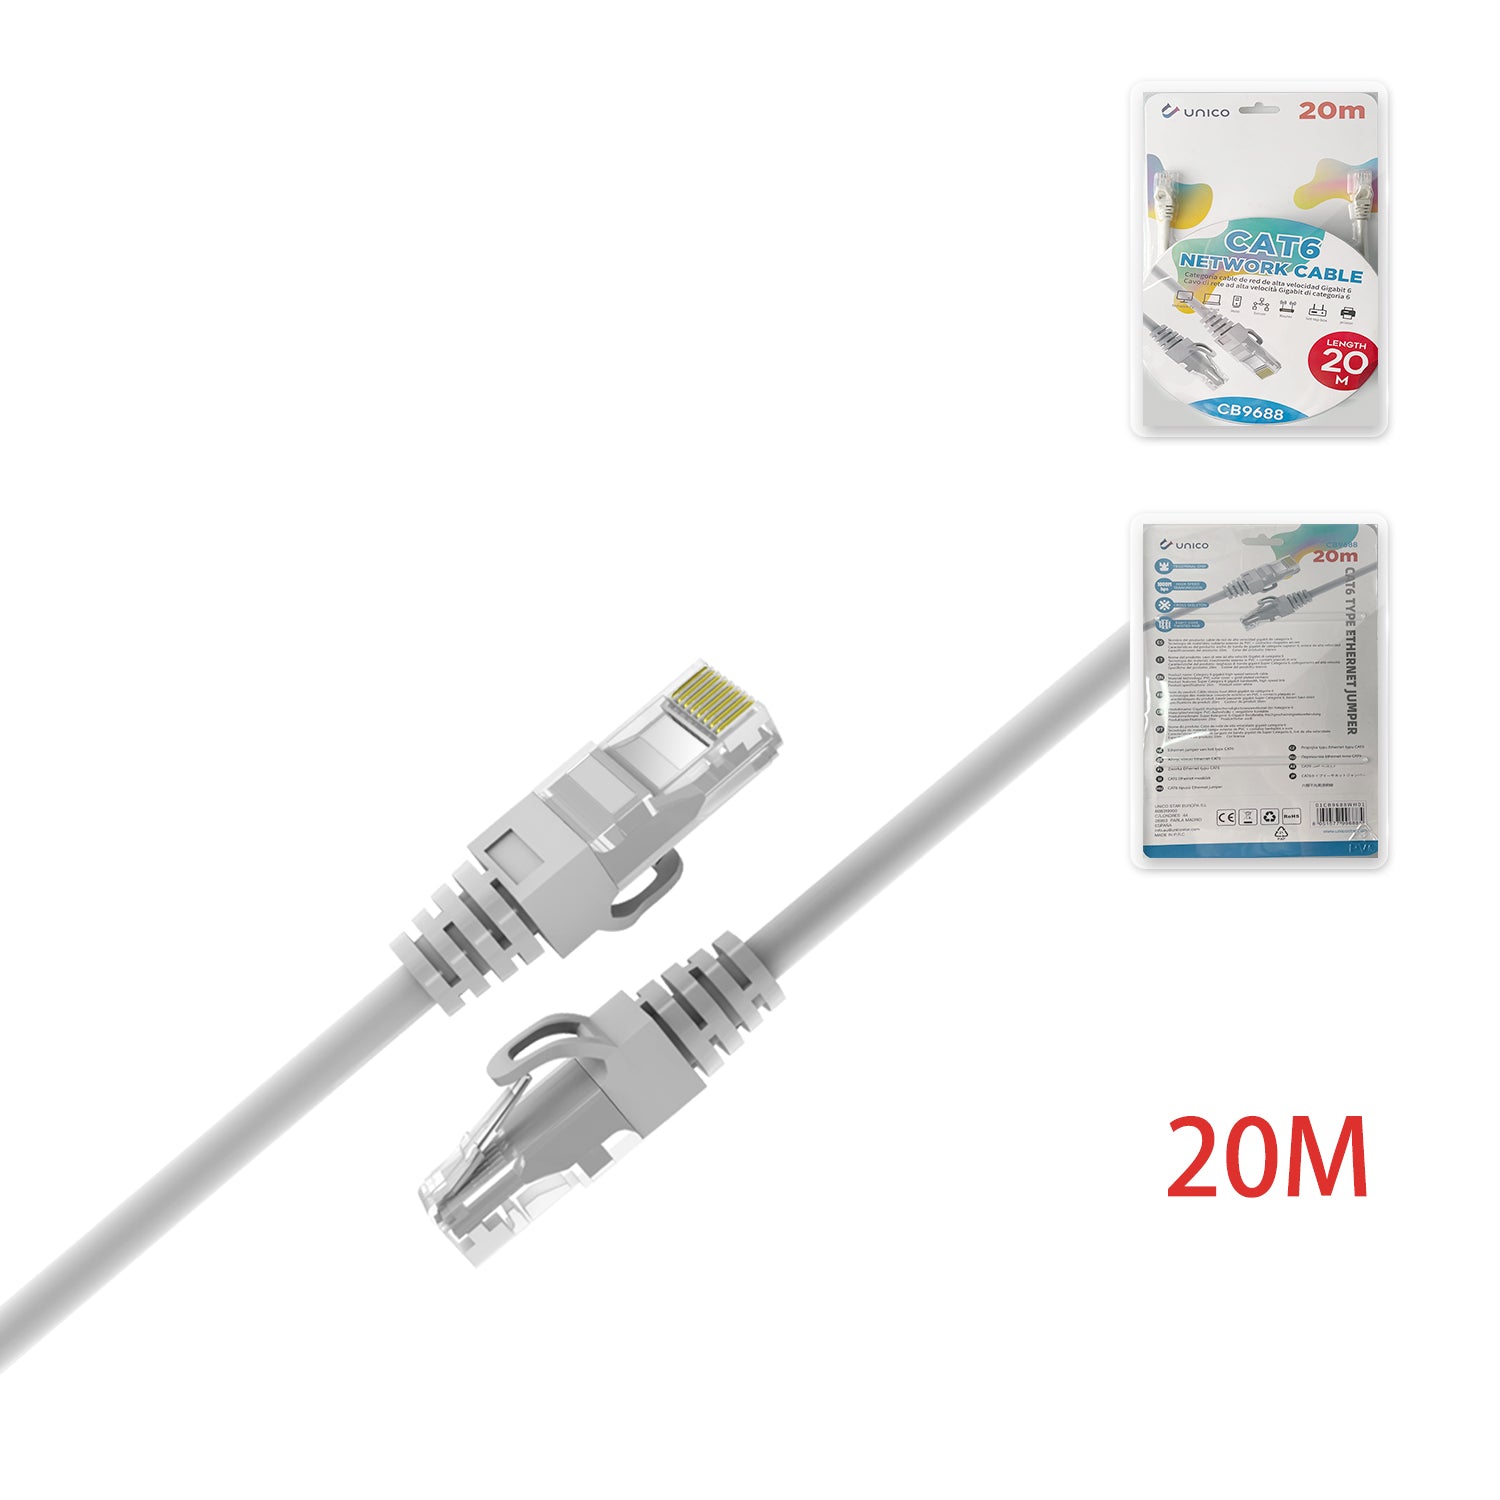 Unico CB9688 CAT.6 UTP Cable de red longitud 20m – OD5.8 – blanco